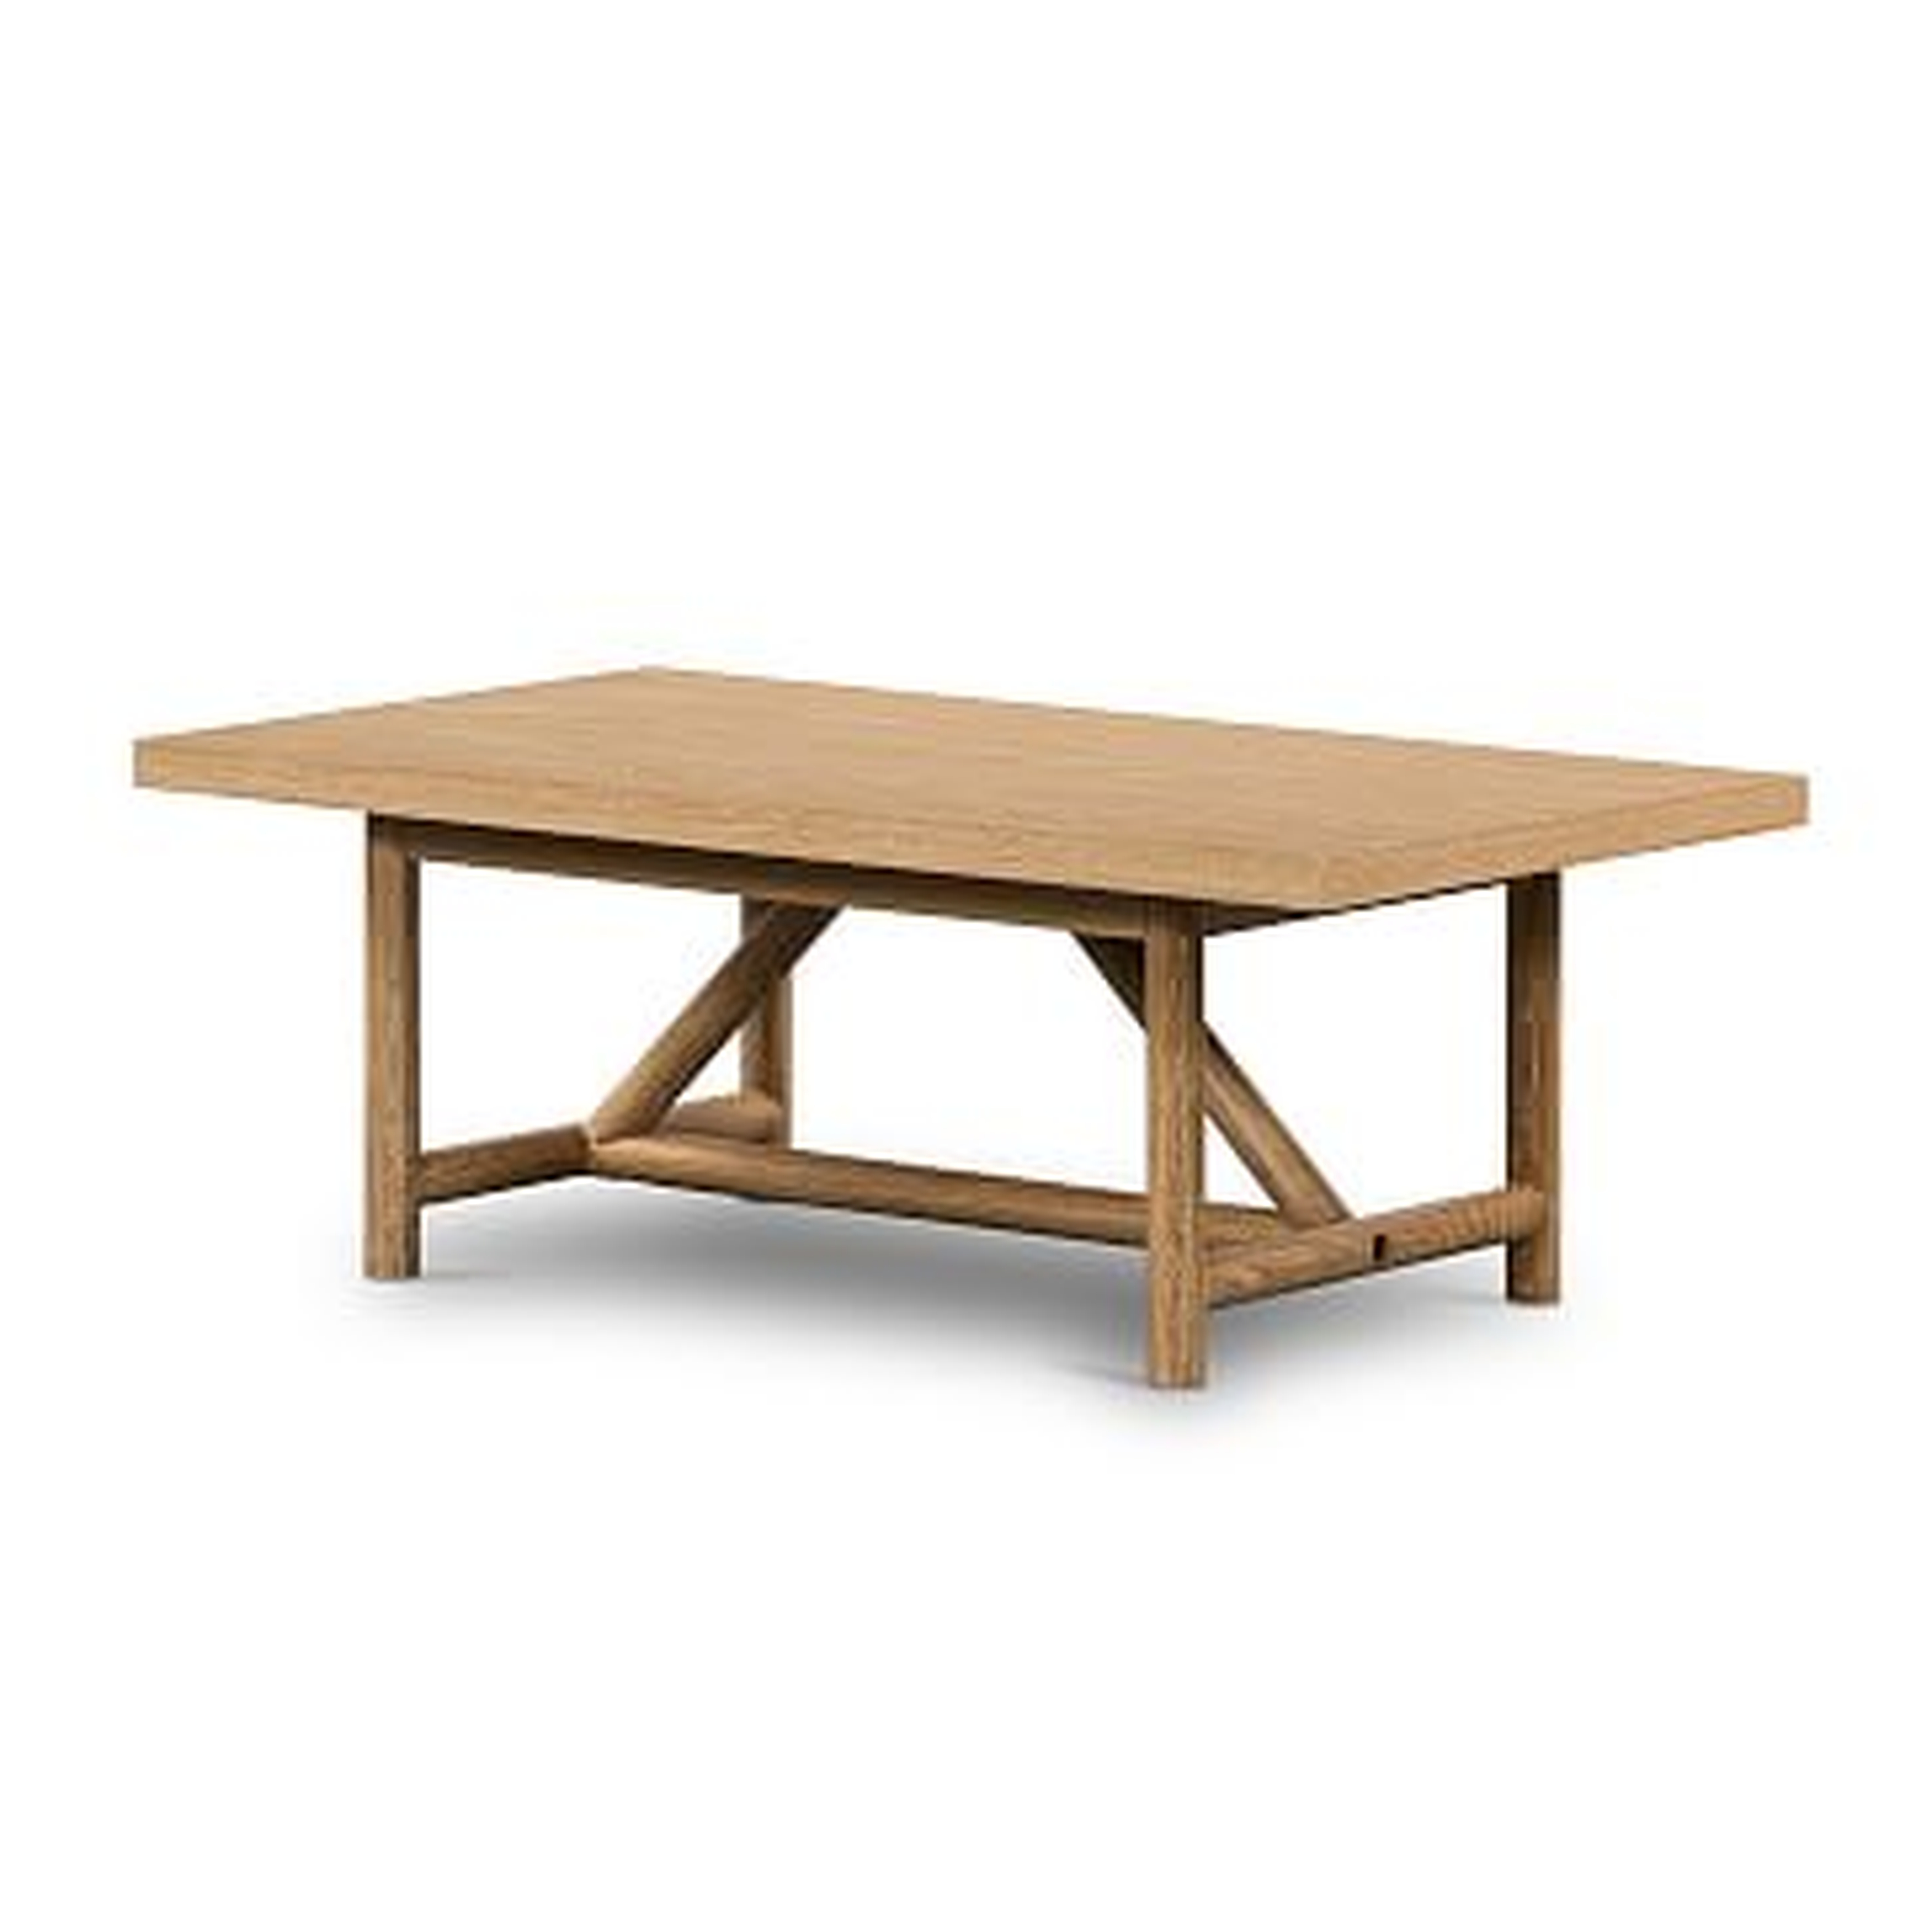 Geometric Oak Base Coffee Table - West Elm